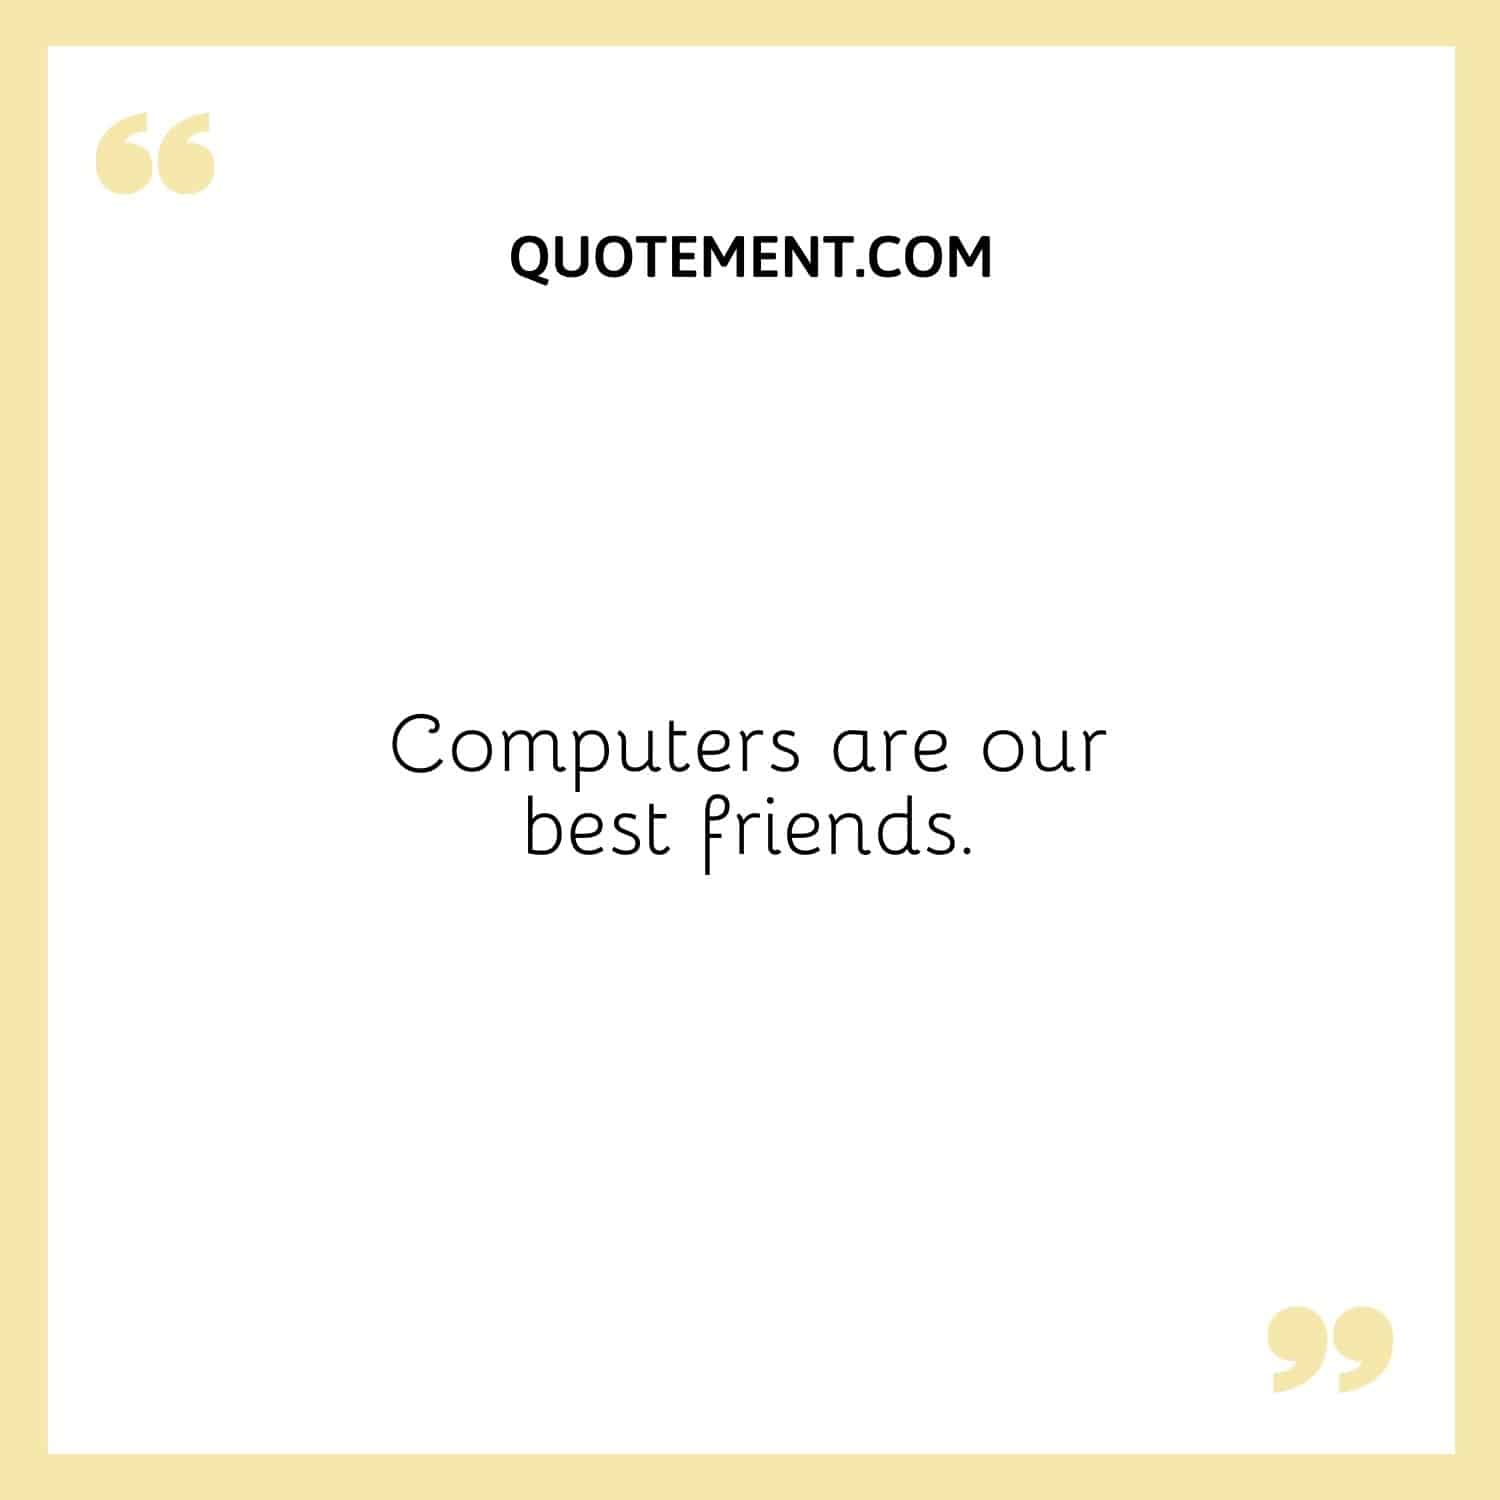 Los ordenadores son nuestros mejores amigos.